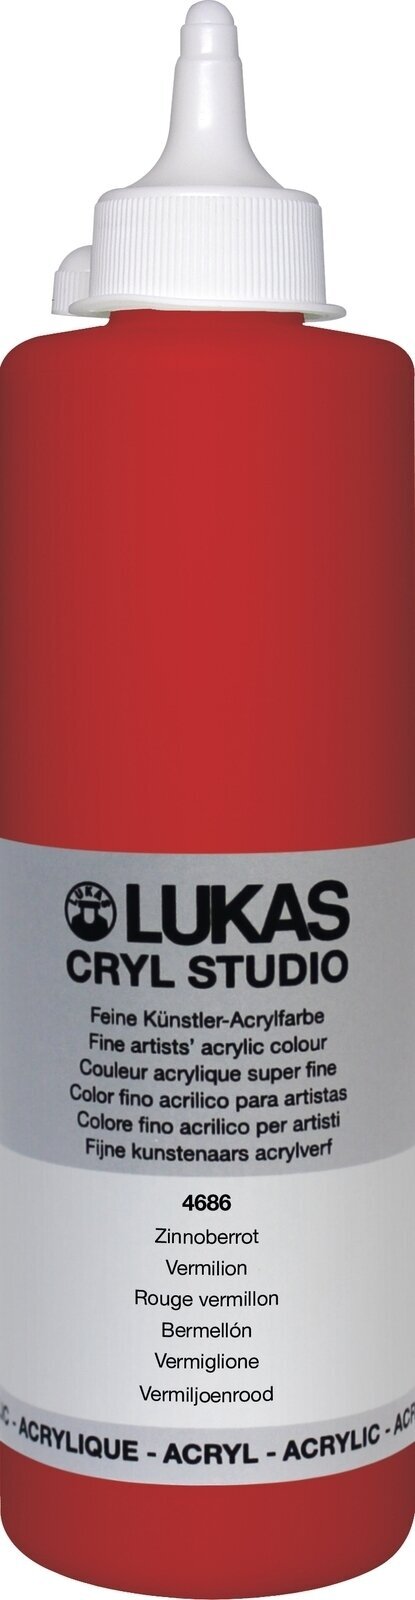 Acrylverf Lukas Cryl Studio Acrylverf 500 ml Vermilion